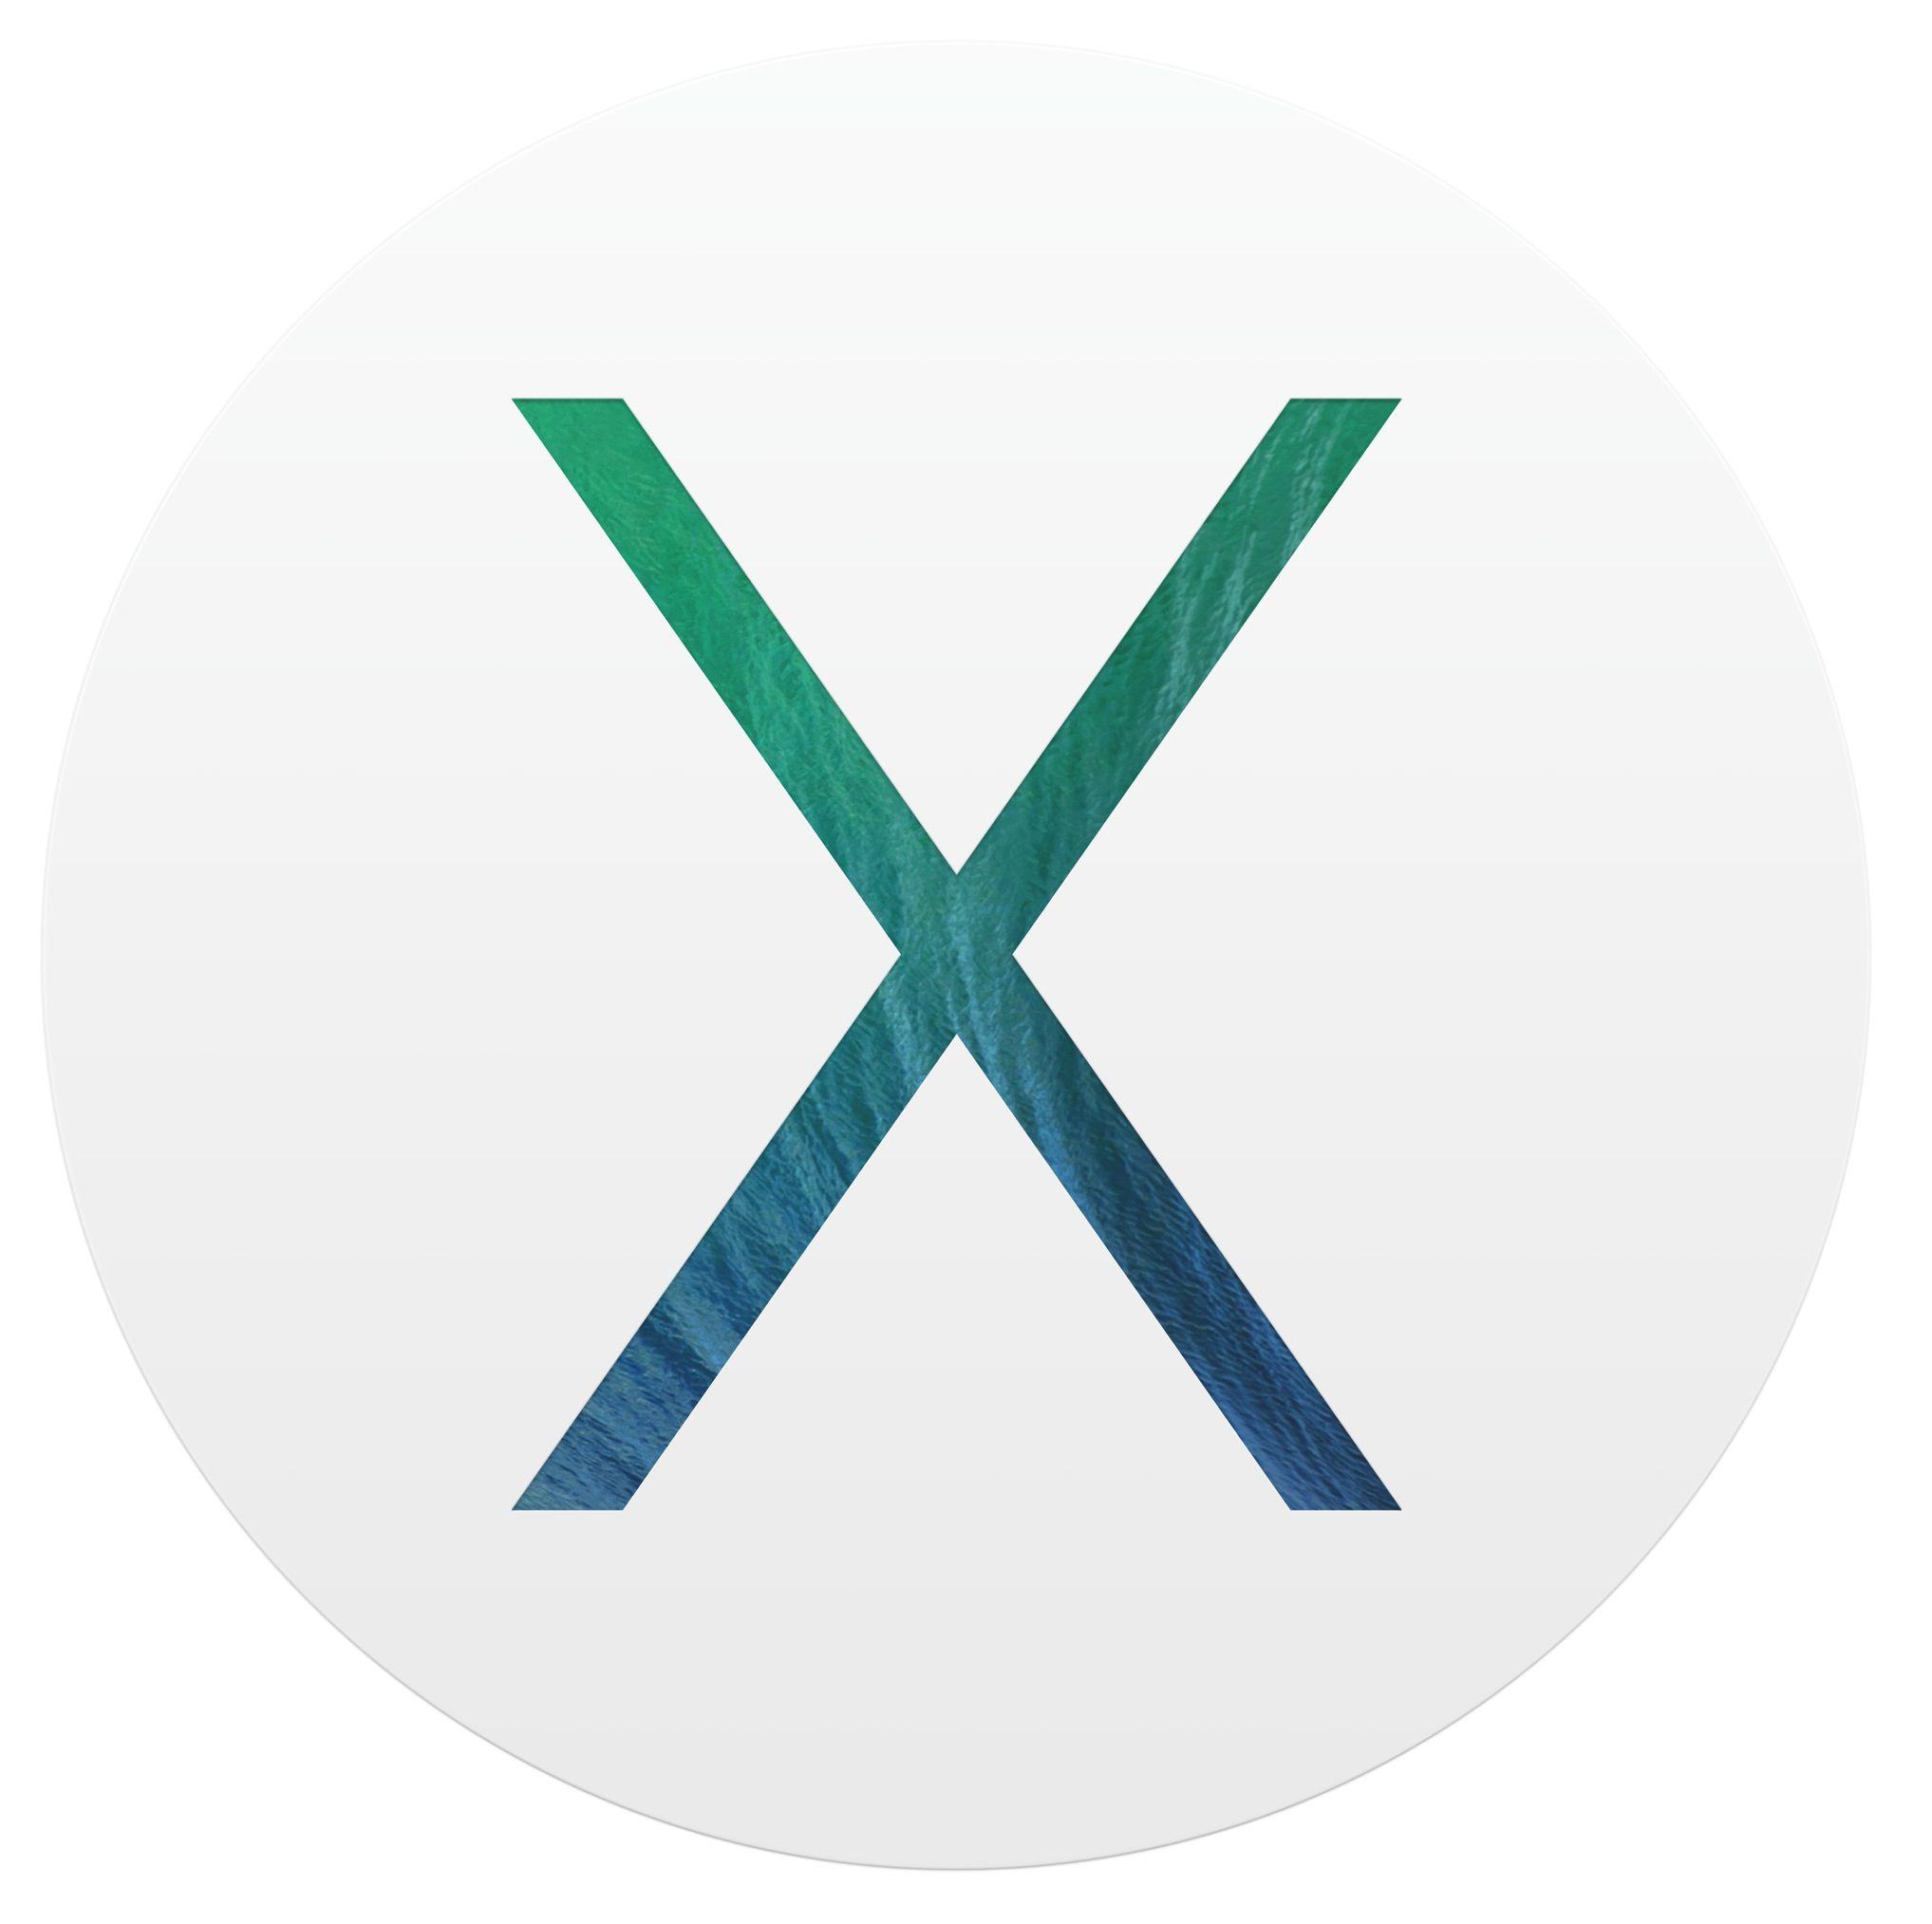 OS X Mavericks Logo - First beta of OS X Mavericks 10.9.4 seeded to devs